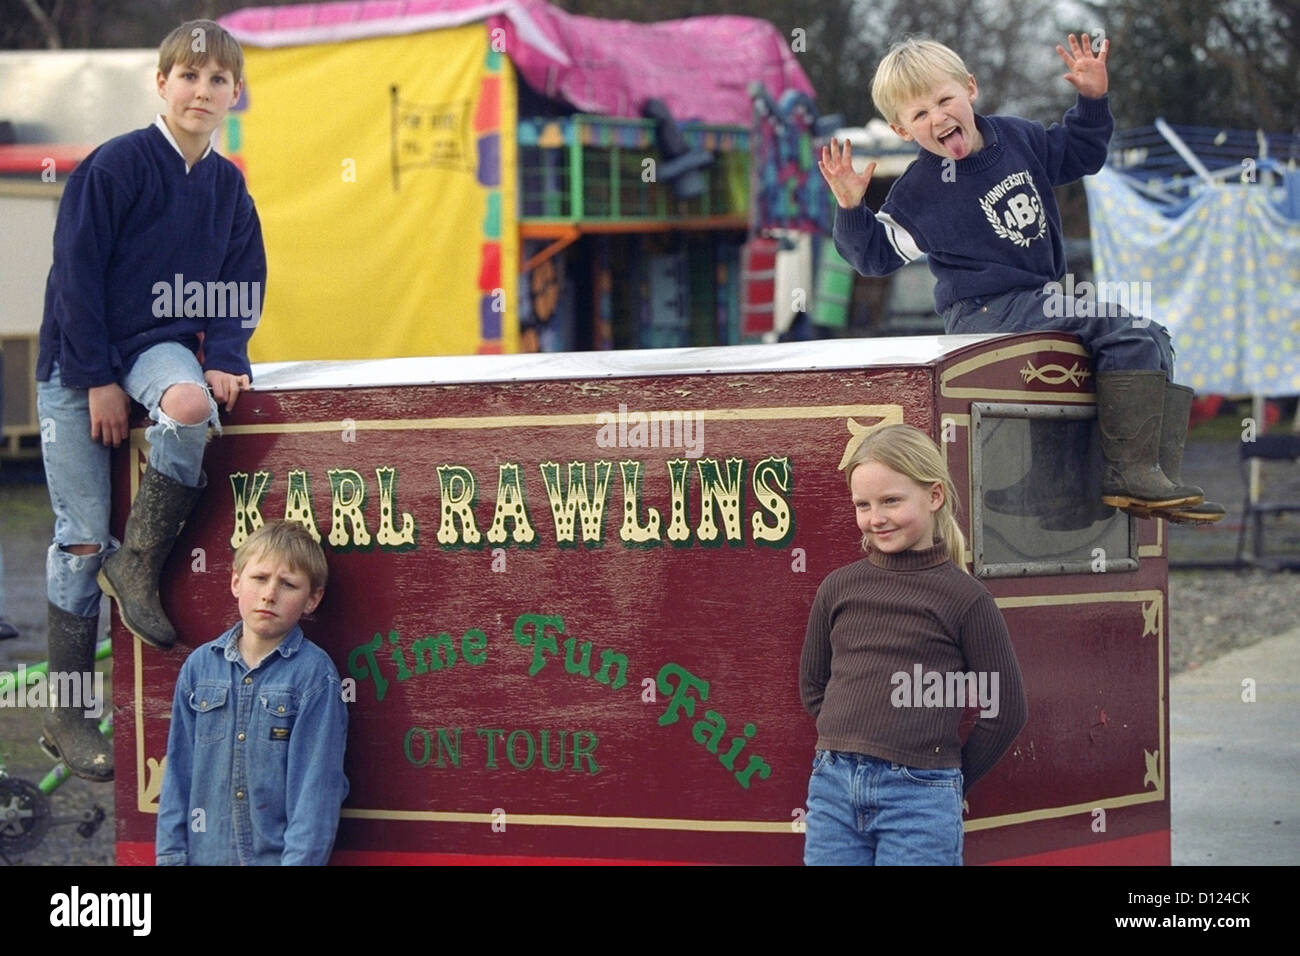 Karl Rawlins Showmen & Fairground, showmen children at their winter retreat, East Grinstead, West Sussex, England, UK Stock Photo